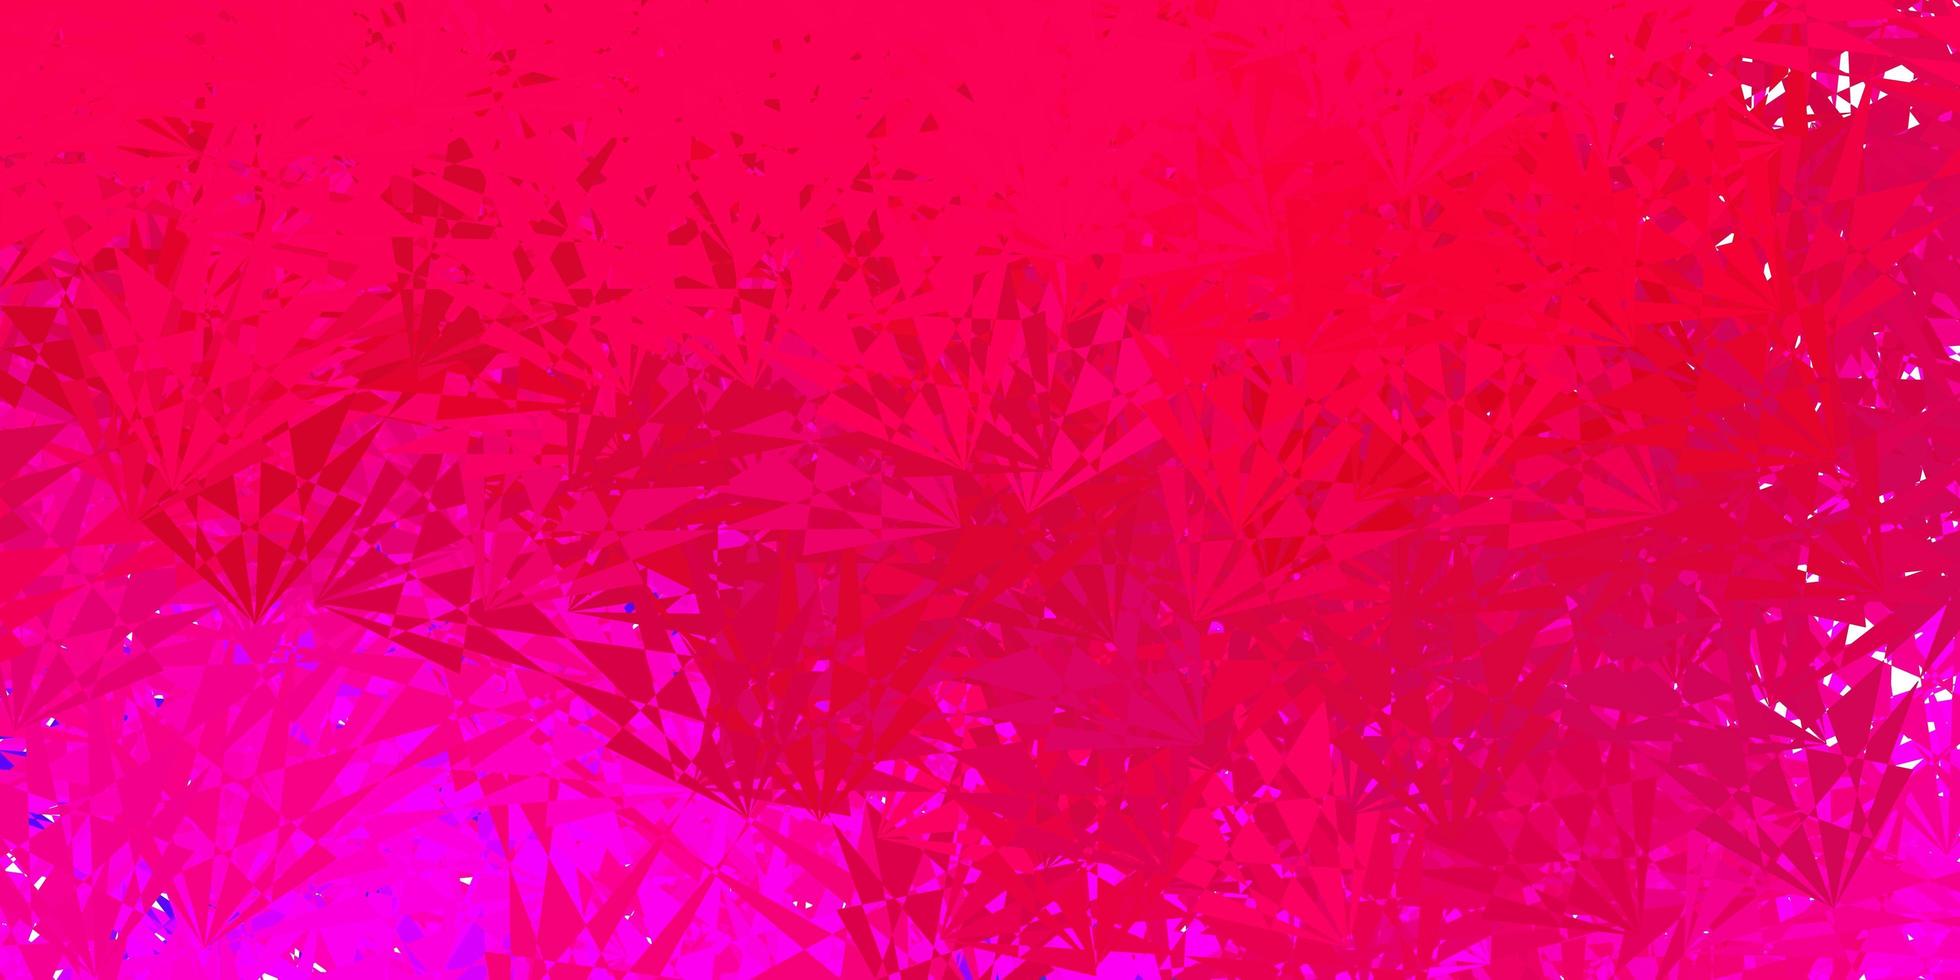 sfondo vettoriale rosa scuro con triangoli, linee.